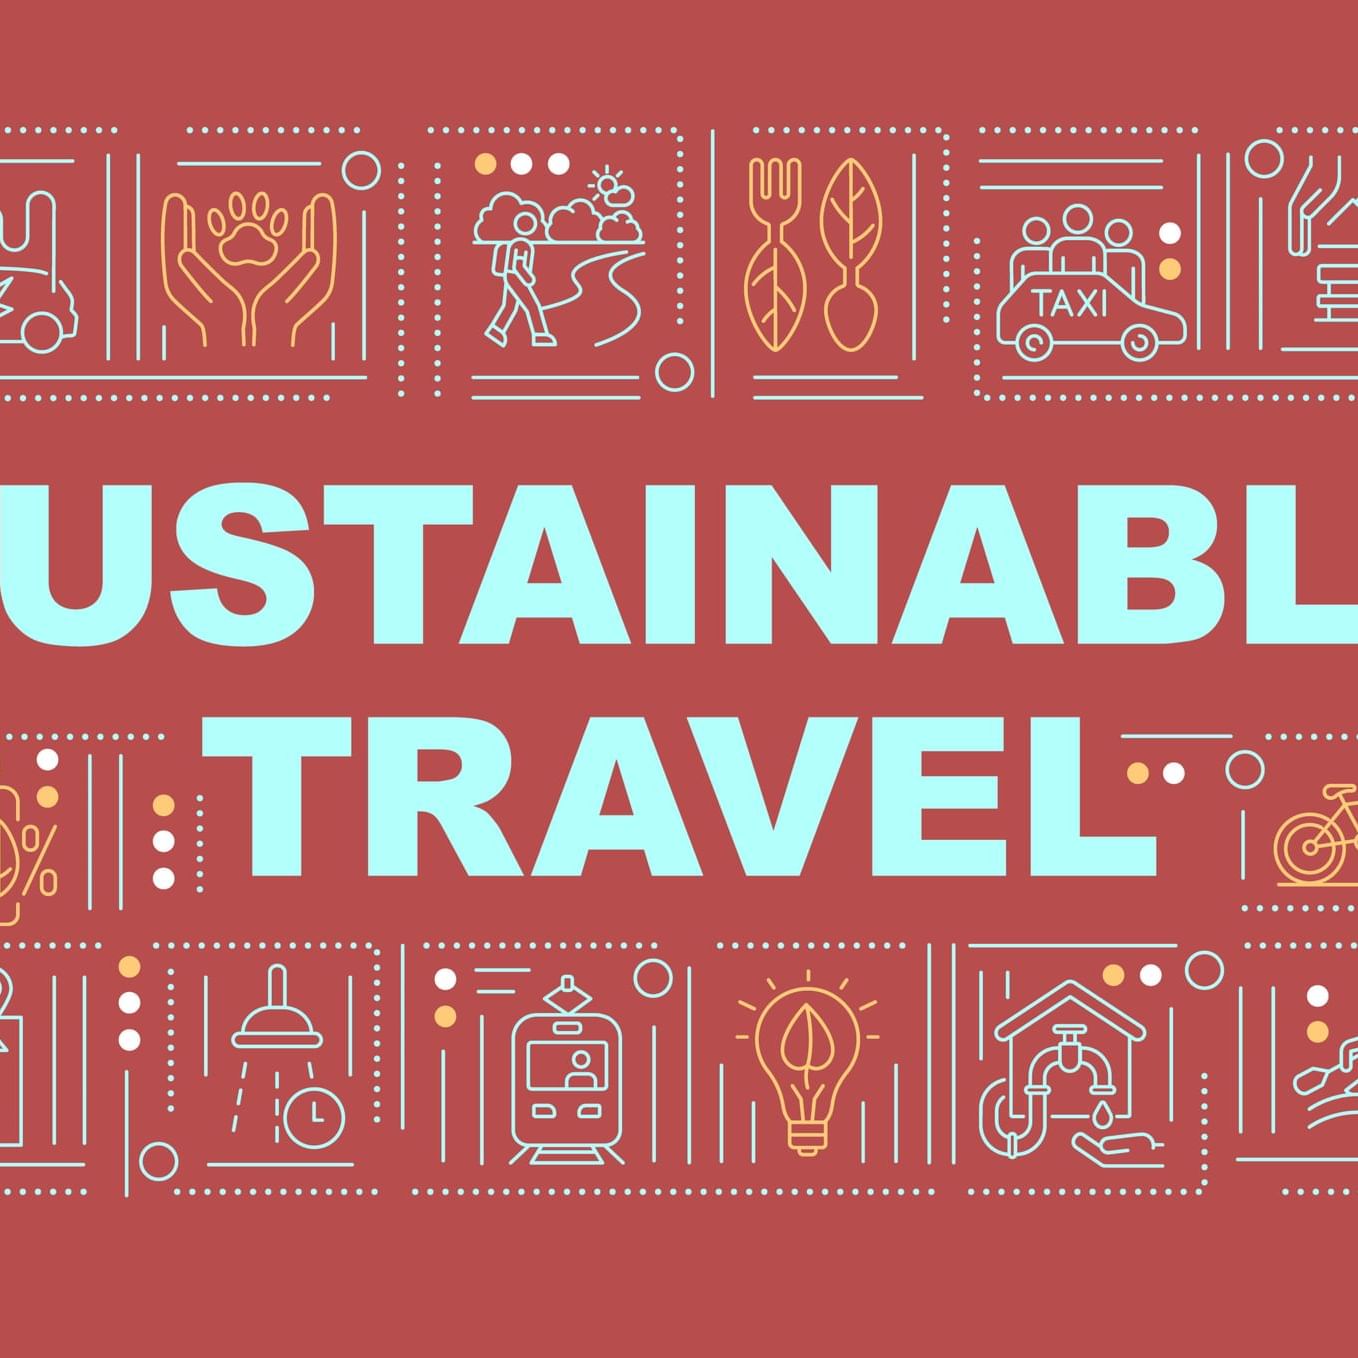 Sustainabe travel blog post